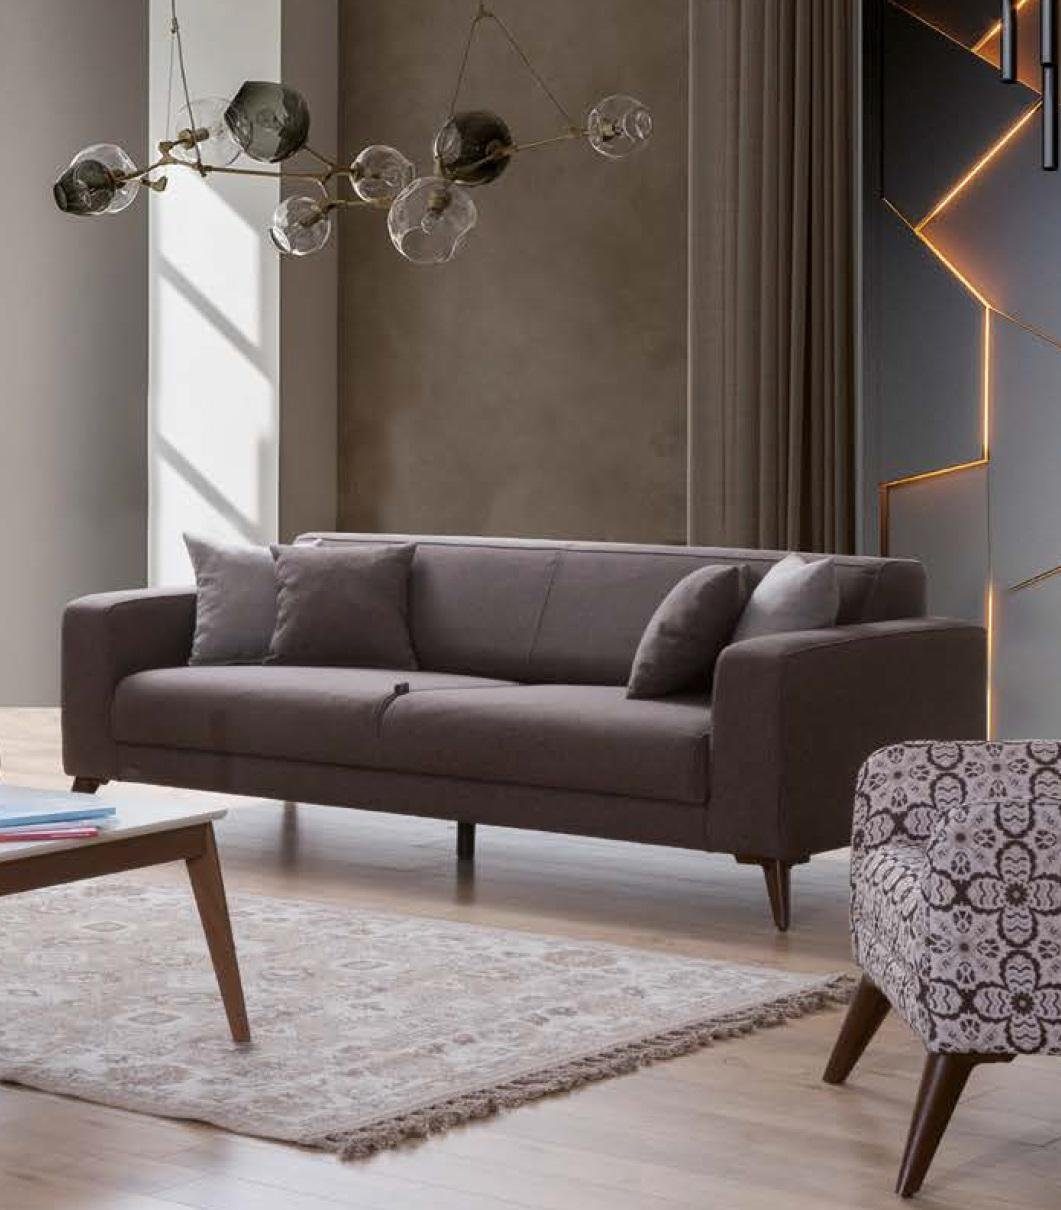 JVmoebel Sofa Sofa 3 Couch Luxus Sofas Dreisitzer Stoff Textil Design Sitz Sitzer